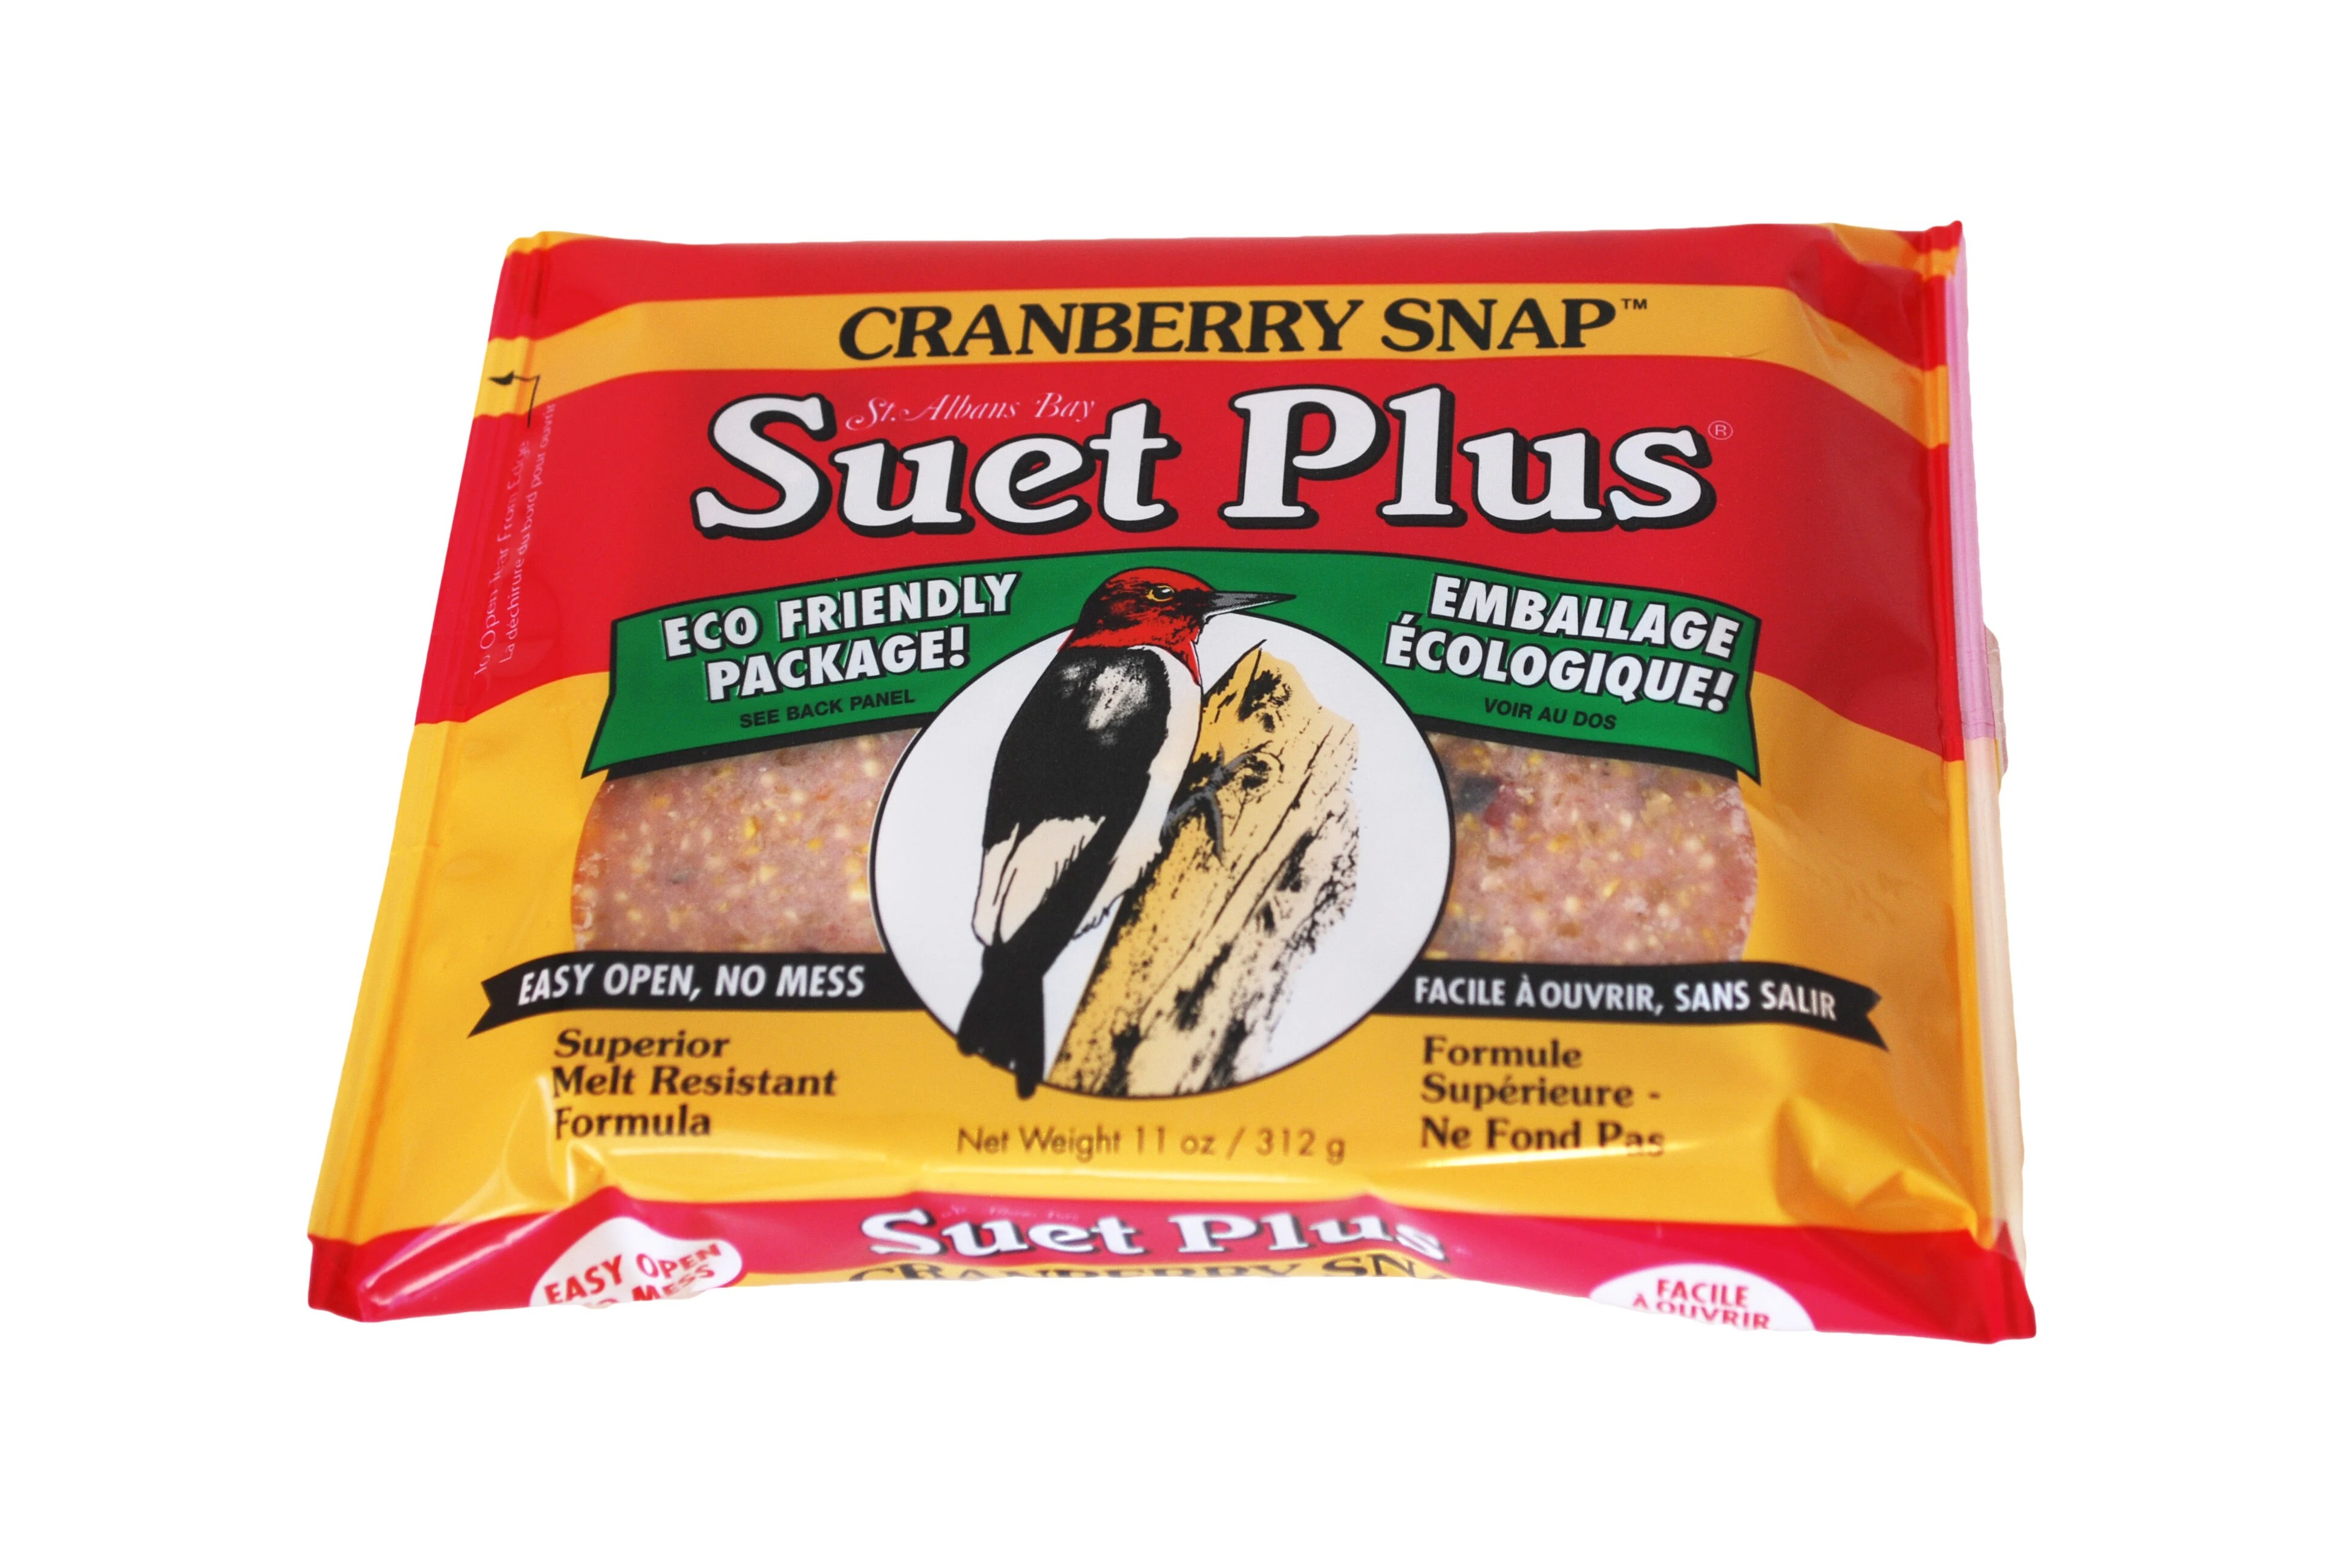 Suet Plus Cranberry Snap